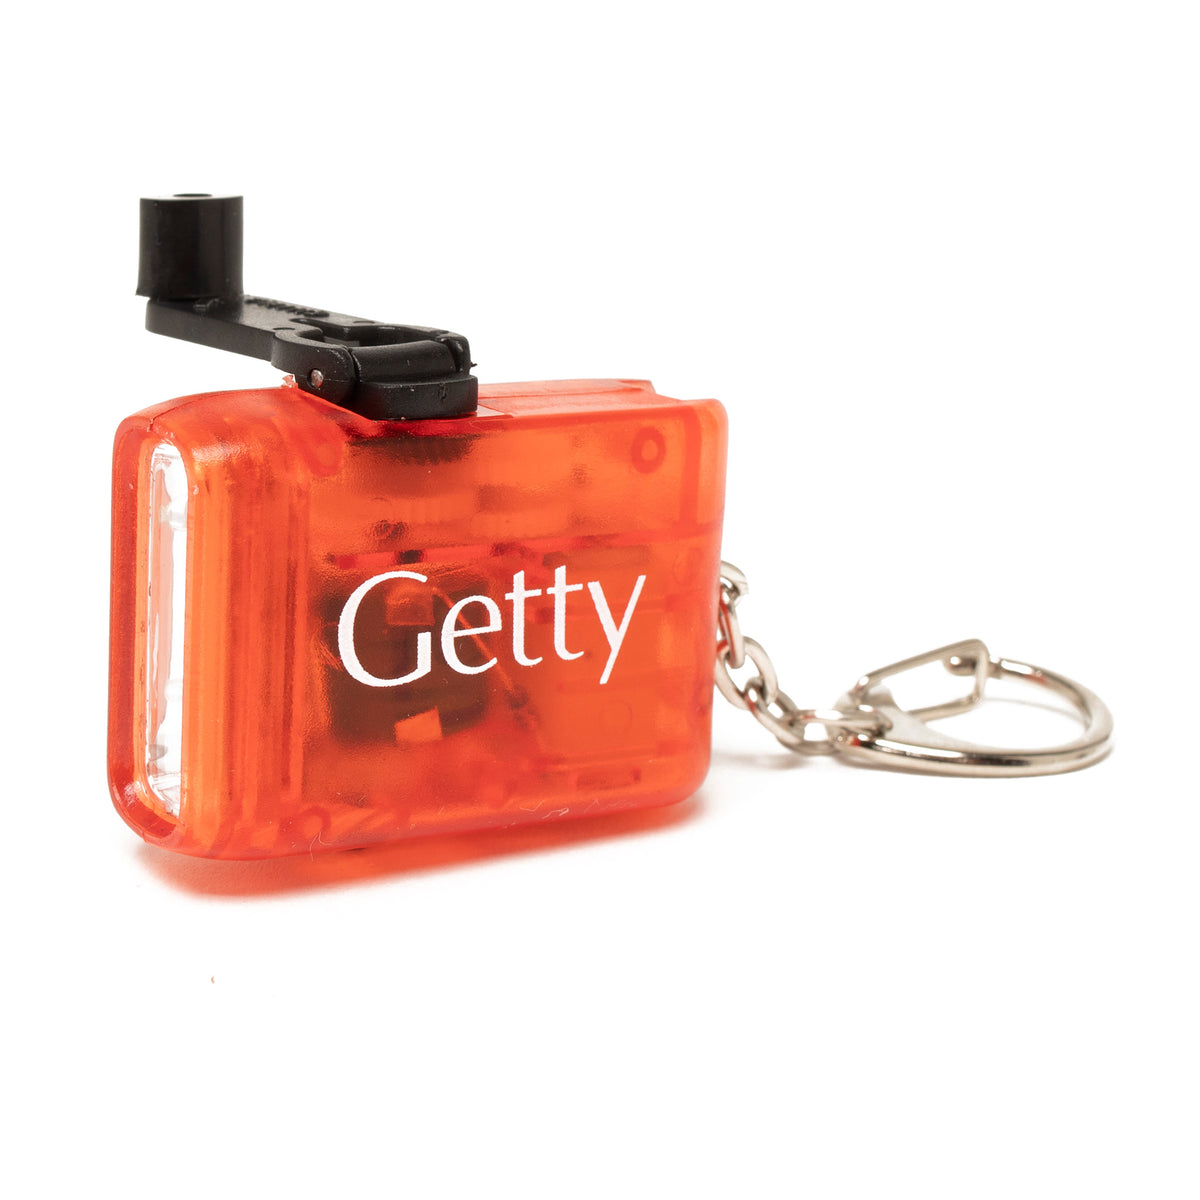 Getty Logo Flashlight Keychain